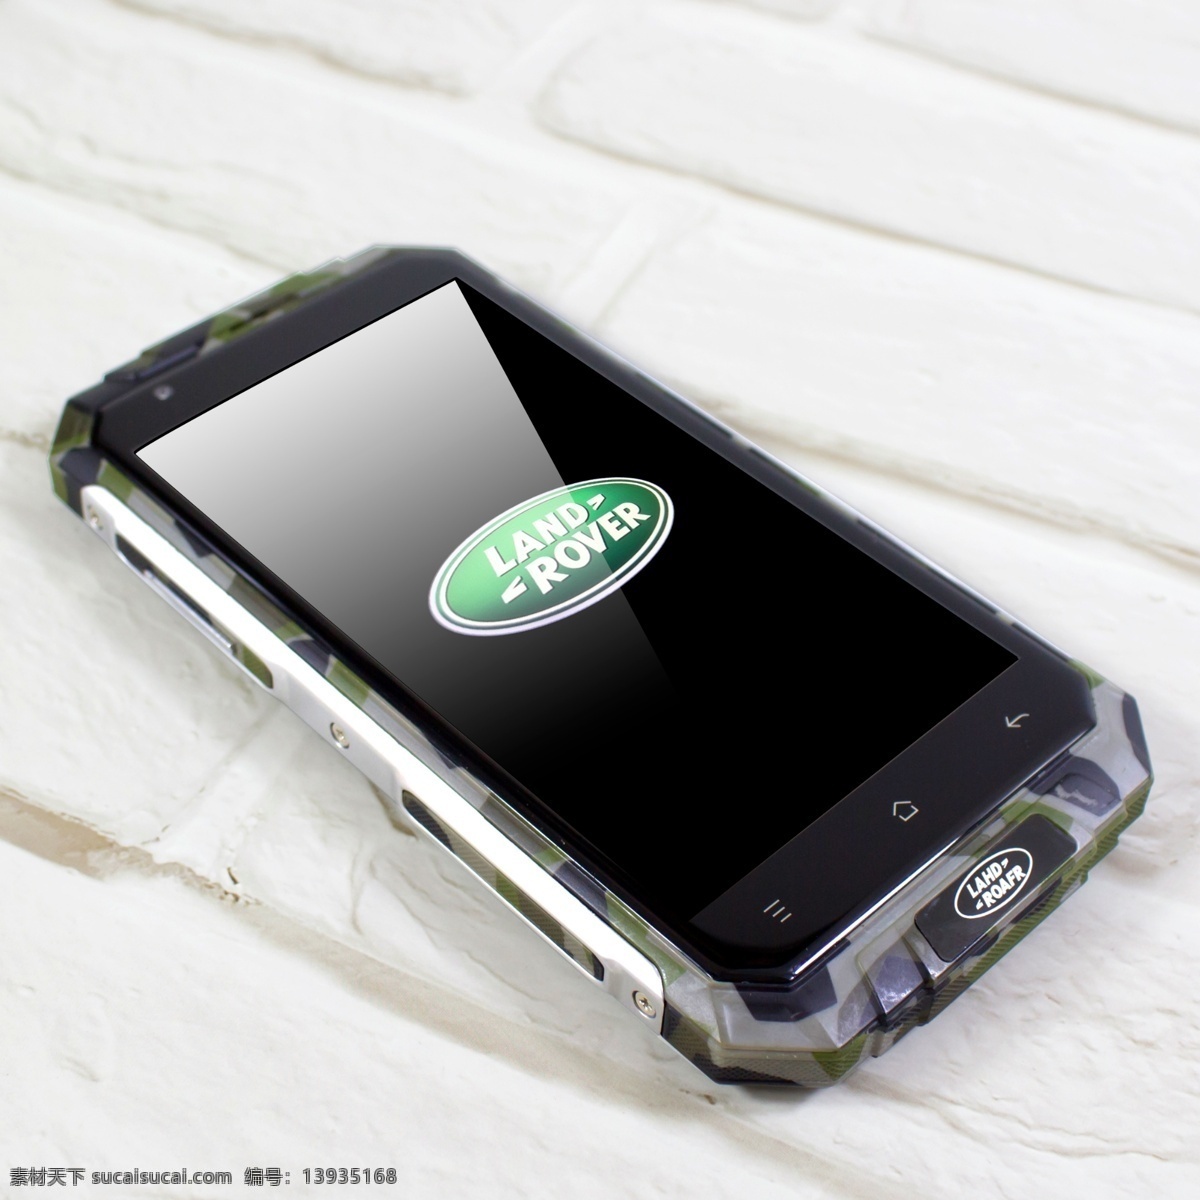 lahd roafr 路虎手机 电霸 智能手机 三防 毫安 数码产品 现代科技